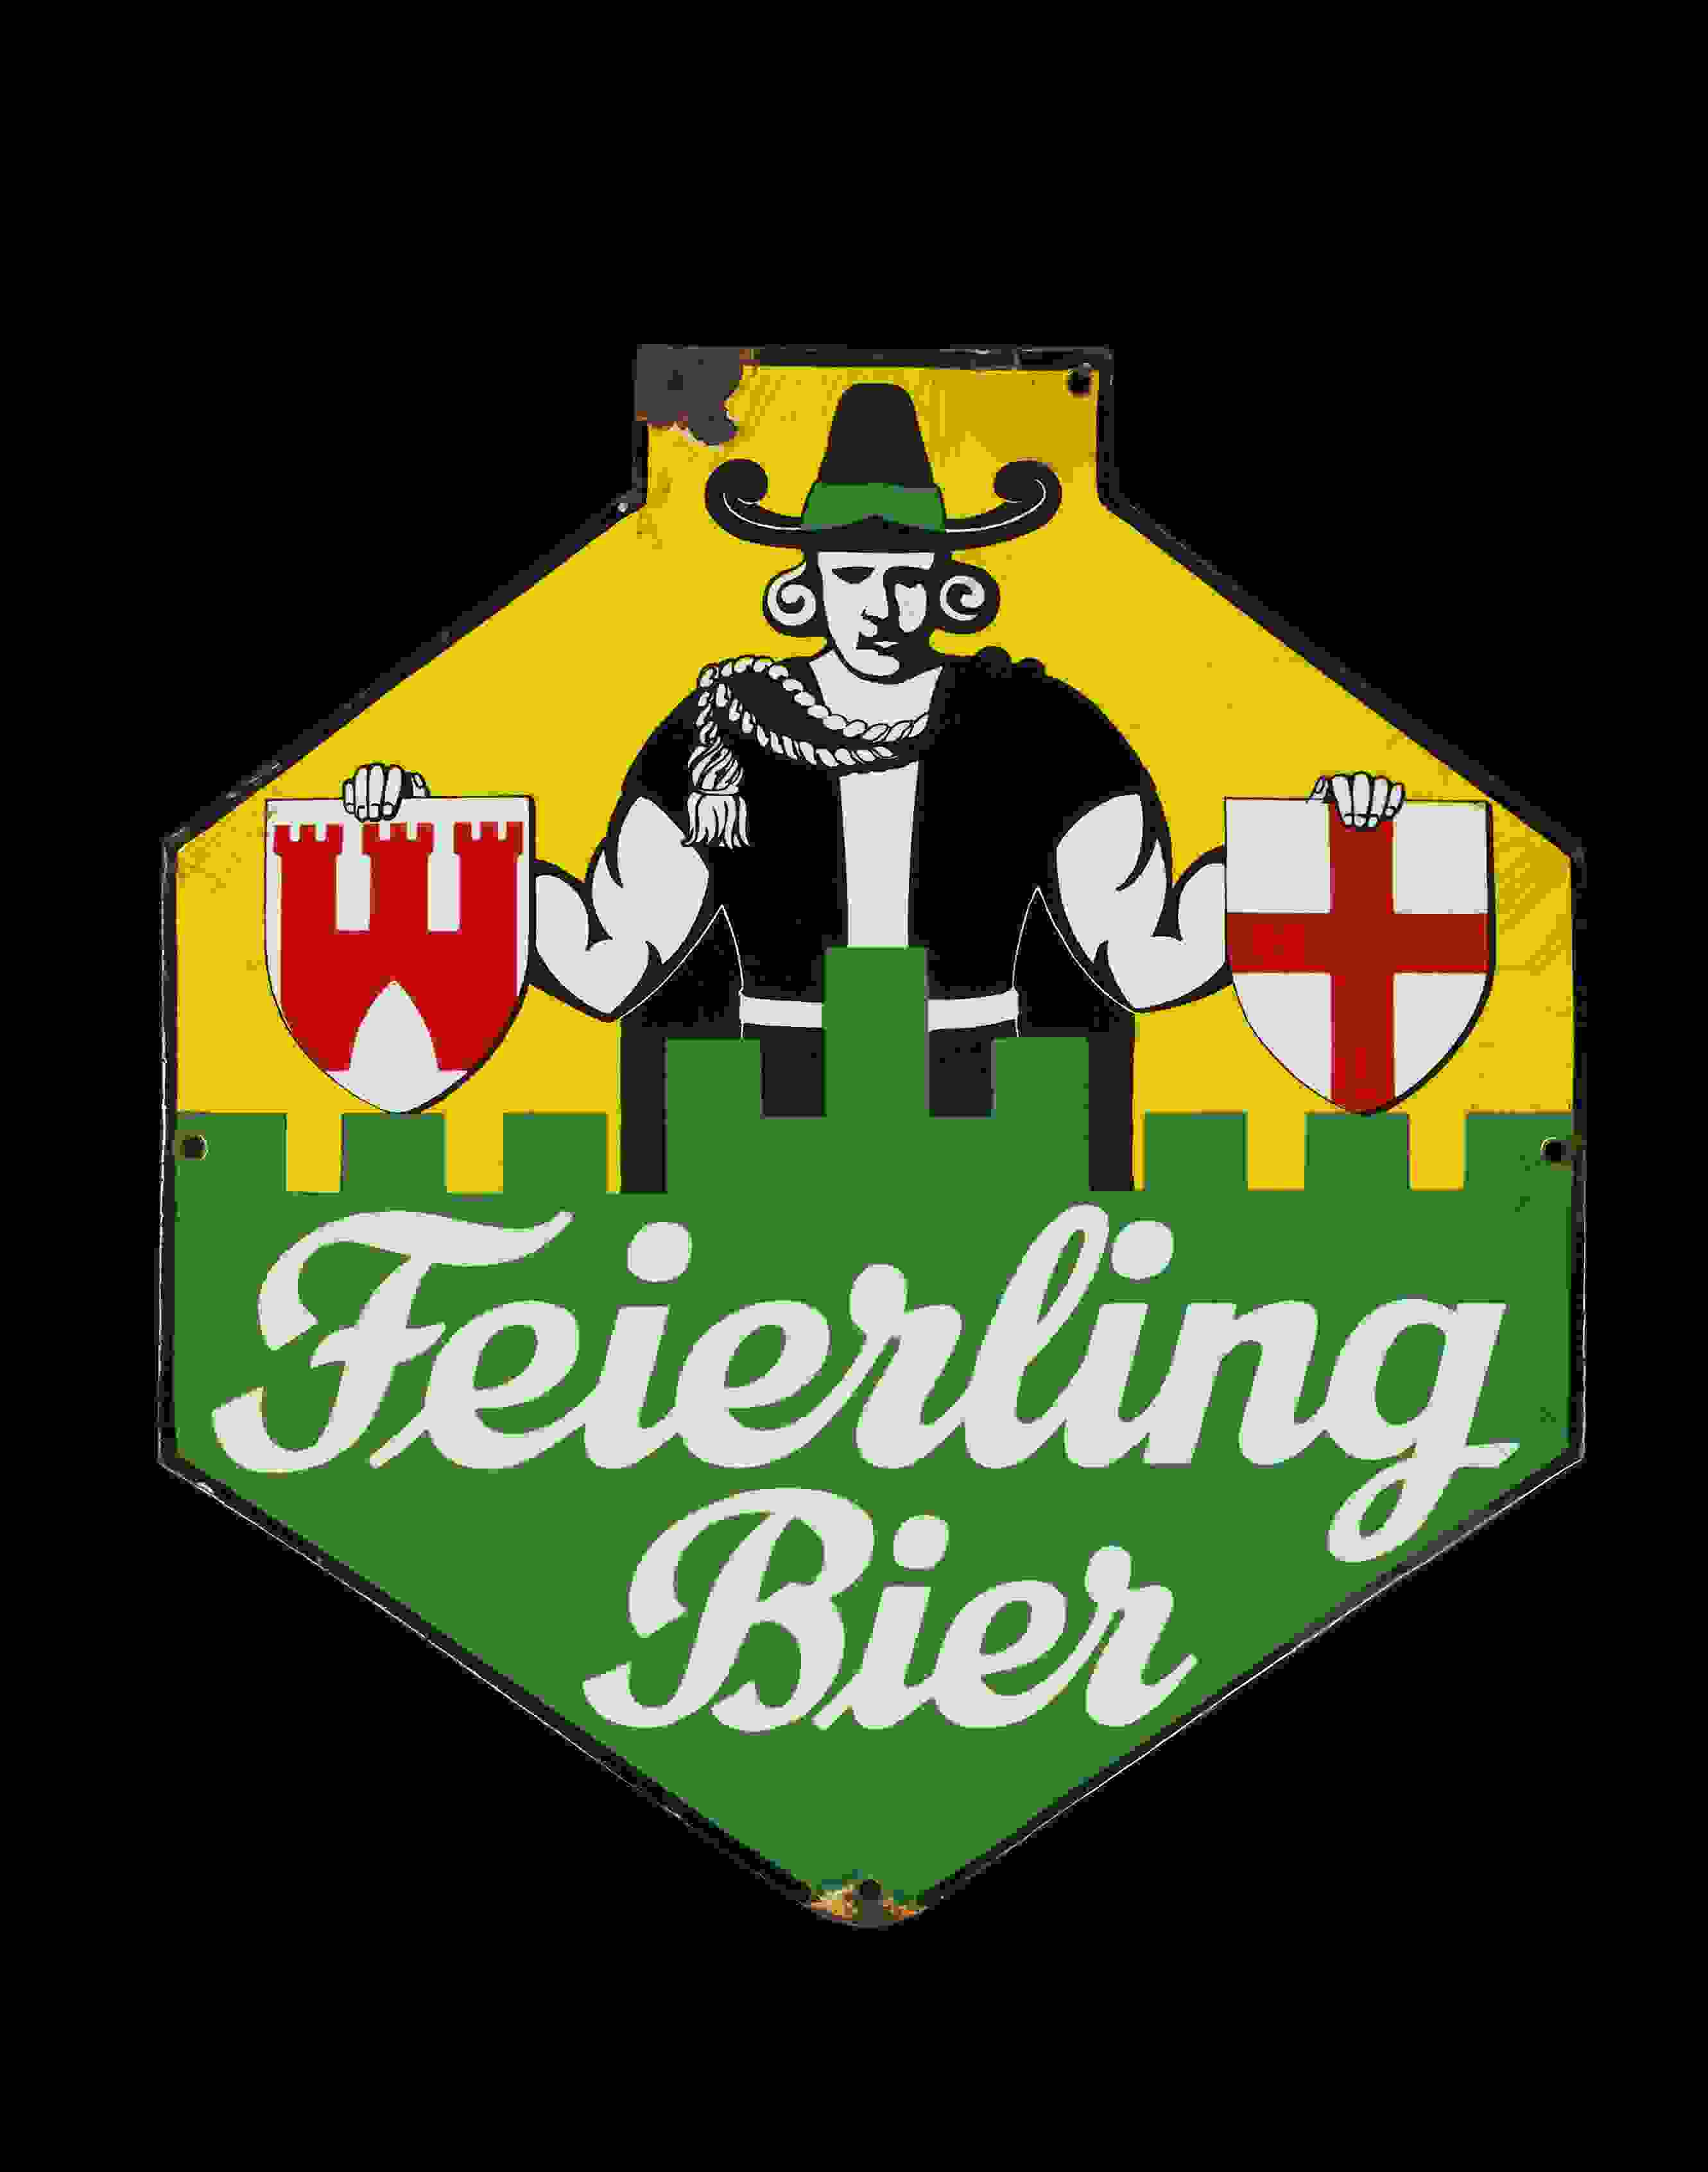 Feierling Bier 